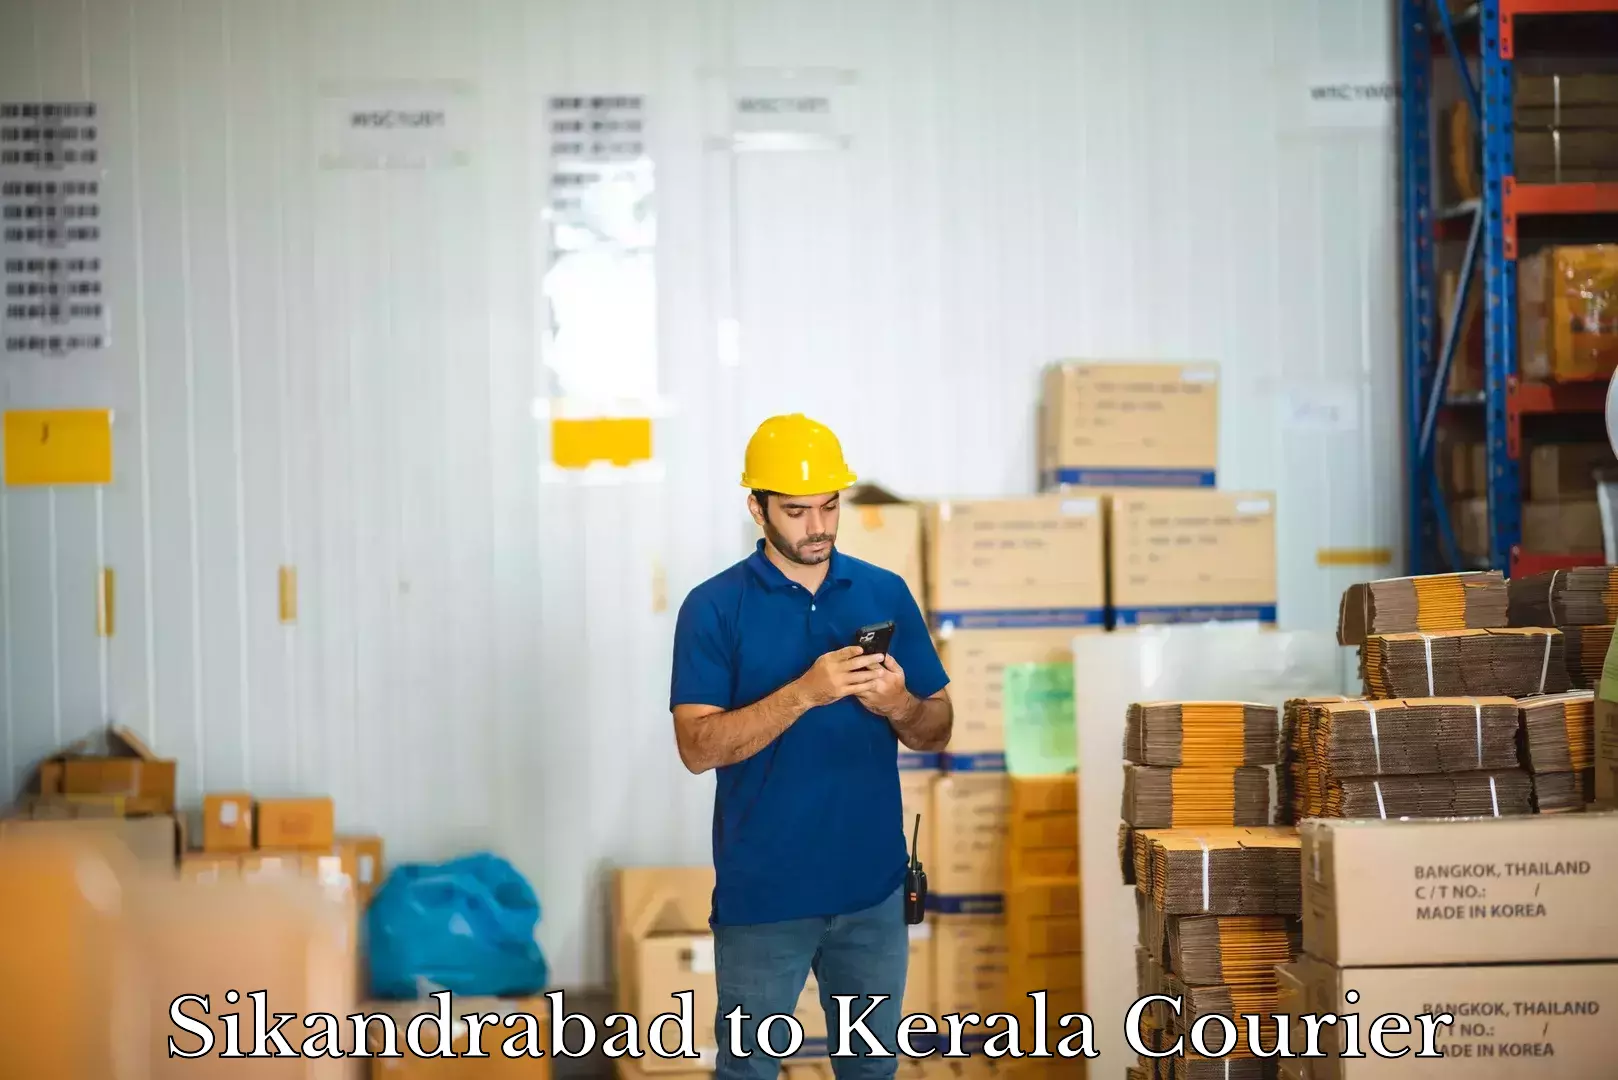 Baggage shipping service Sikandrabad to Kerala